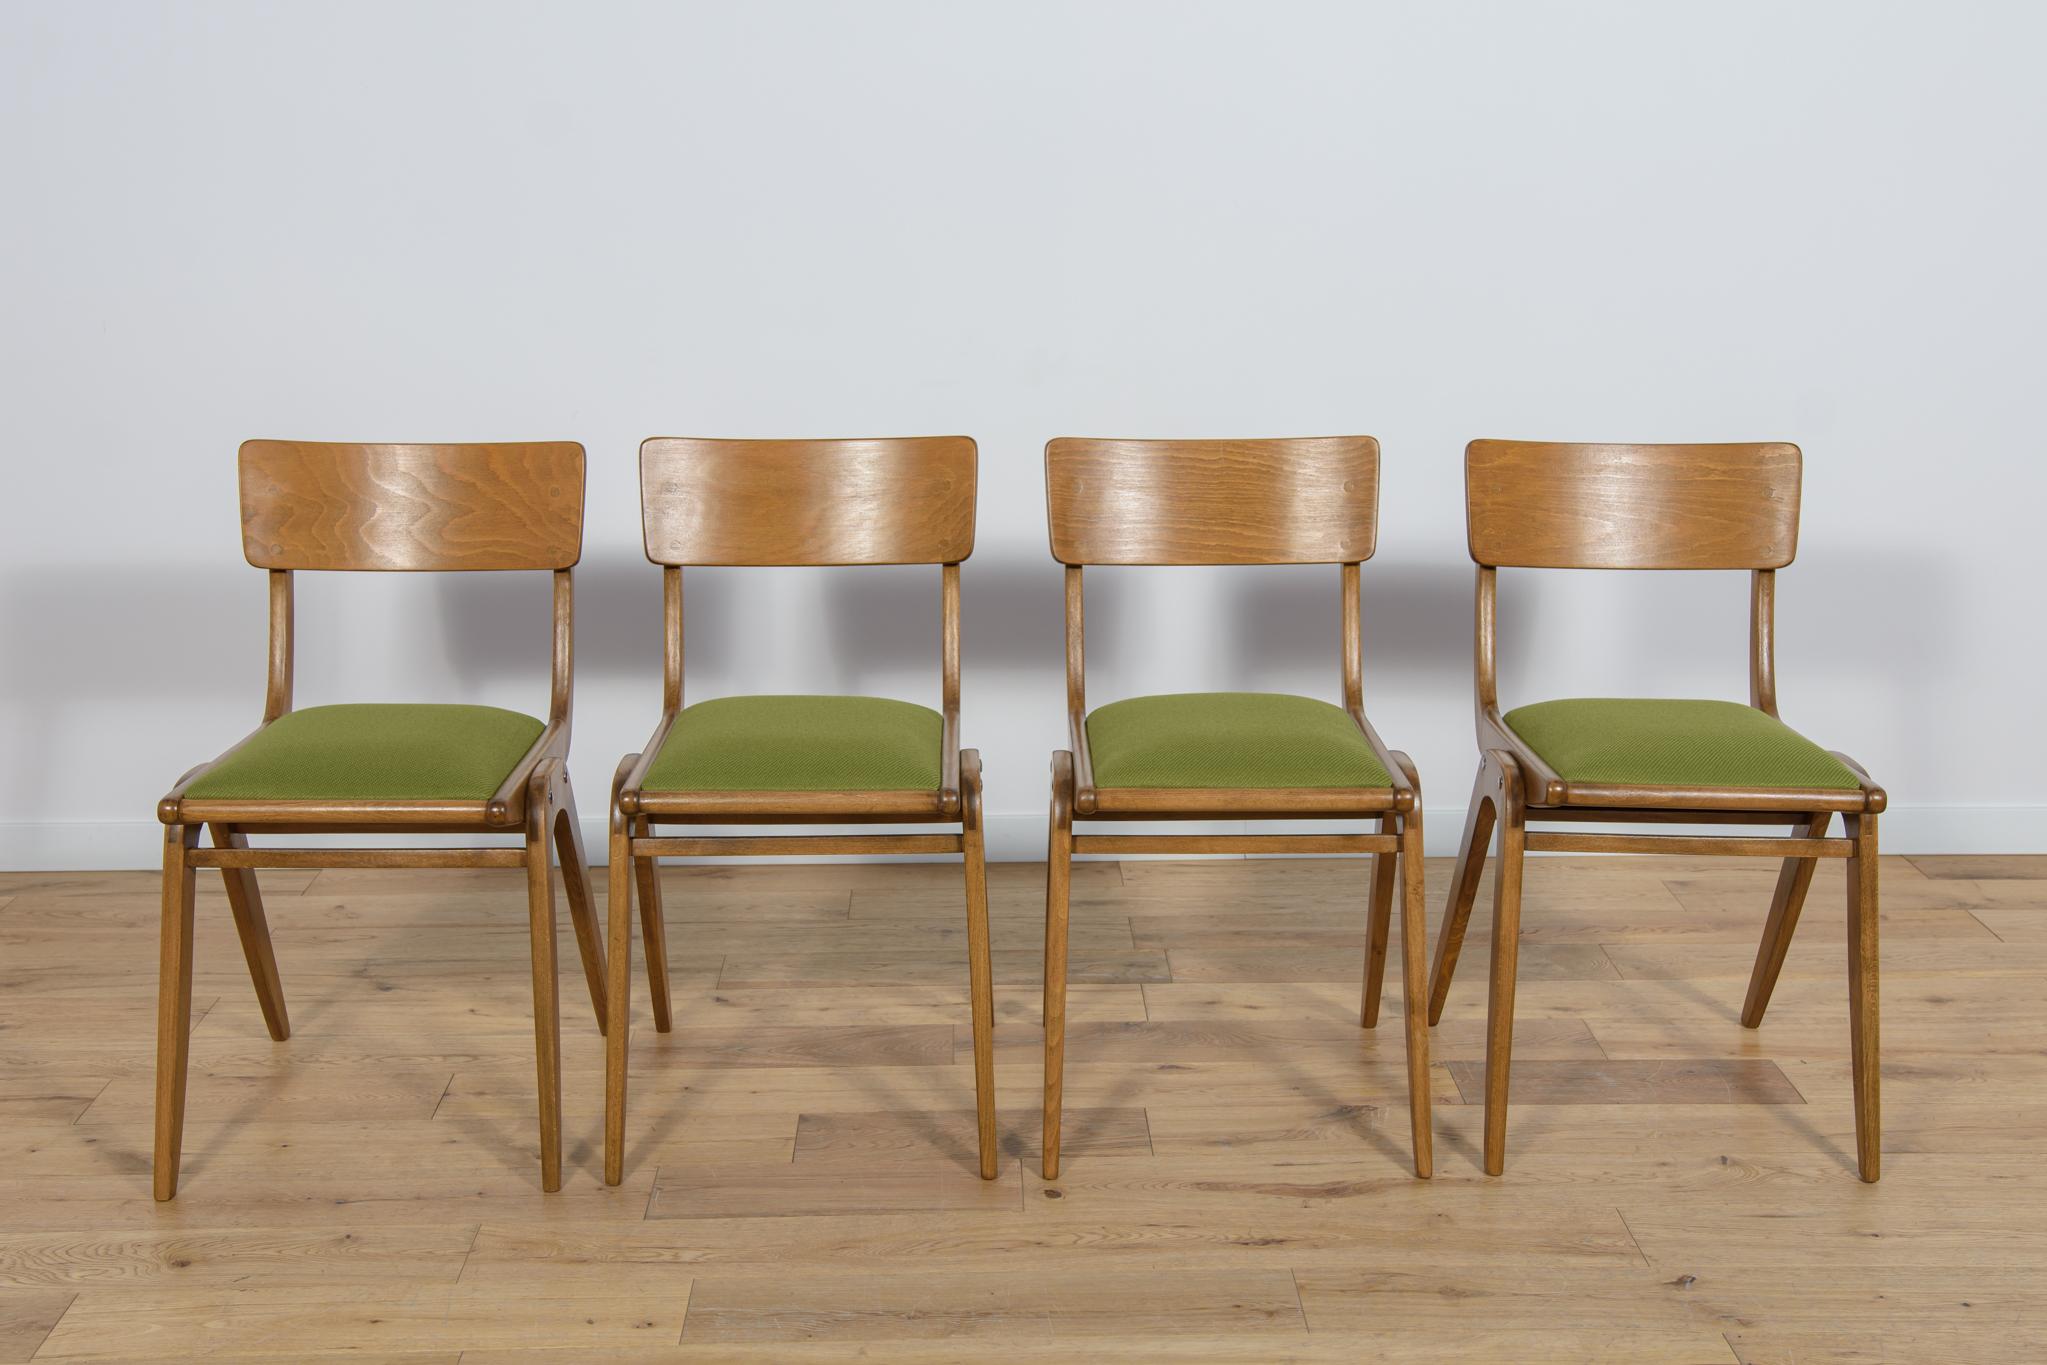 Ensemble de 4 chaises de salle à manger polonaises modèle Boomerang 229XB de la fabrique de meubles Gościcińskie dans les années 1960. Le châssis des chaises est en bois de hêtre. Les éléments en bois sont nettoyés de l'ancienne surface, peints avec